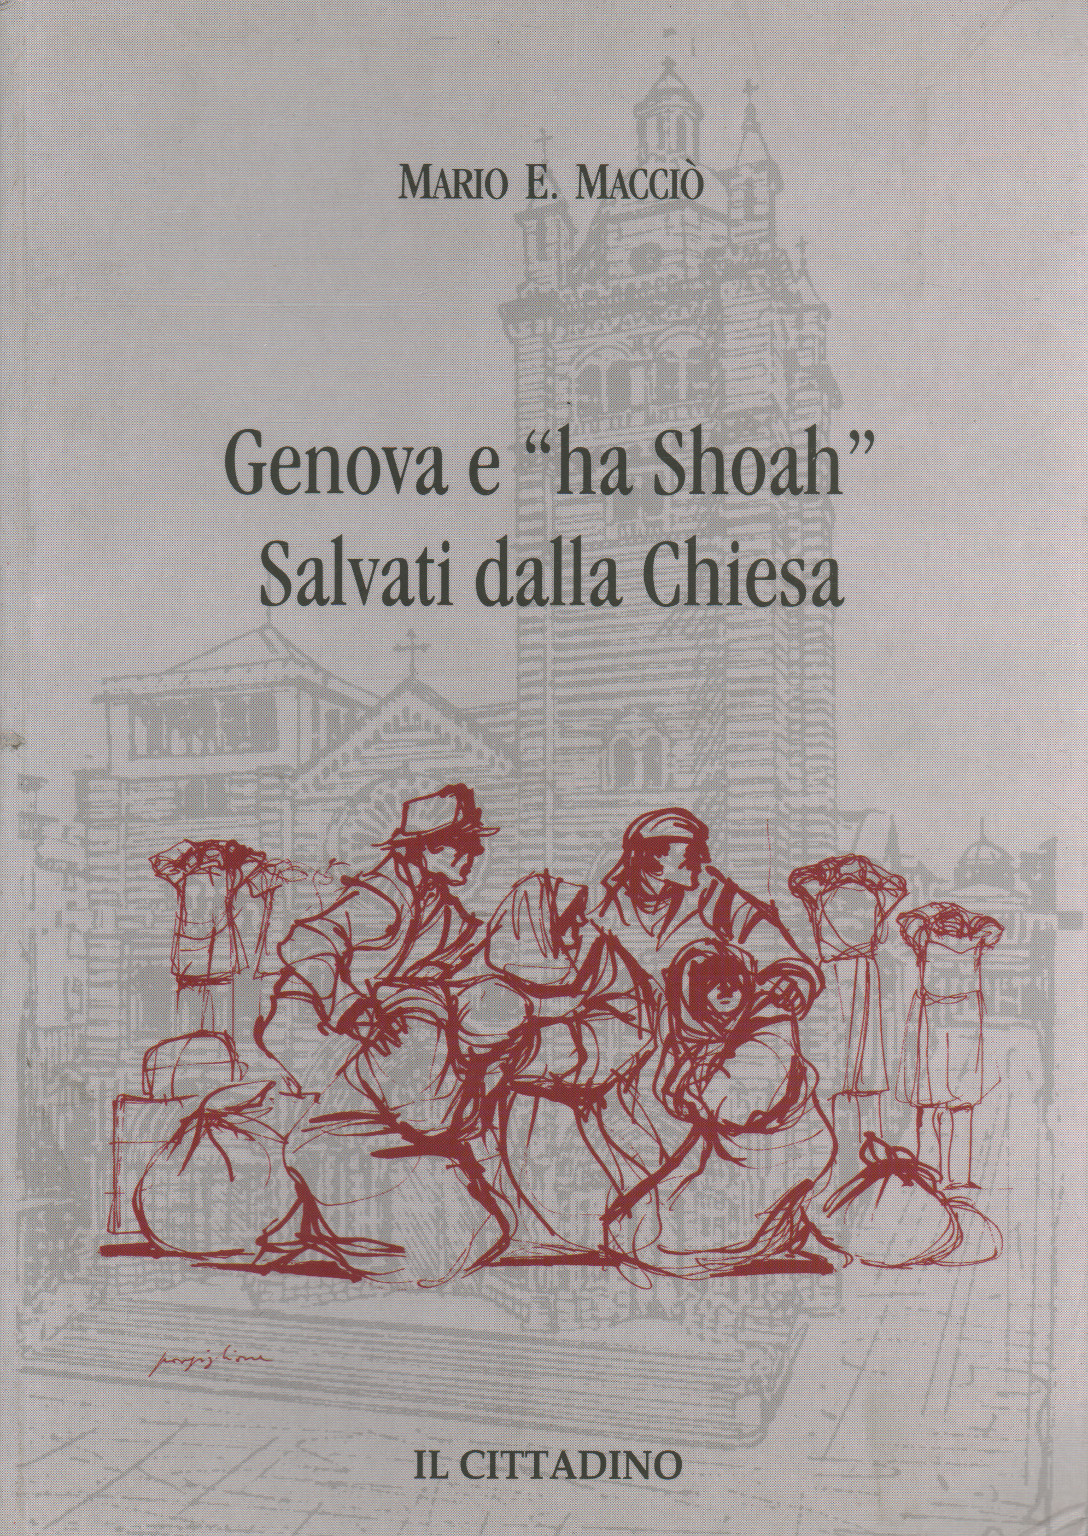 Genoa and "Shoah, Mario E. Macciò